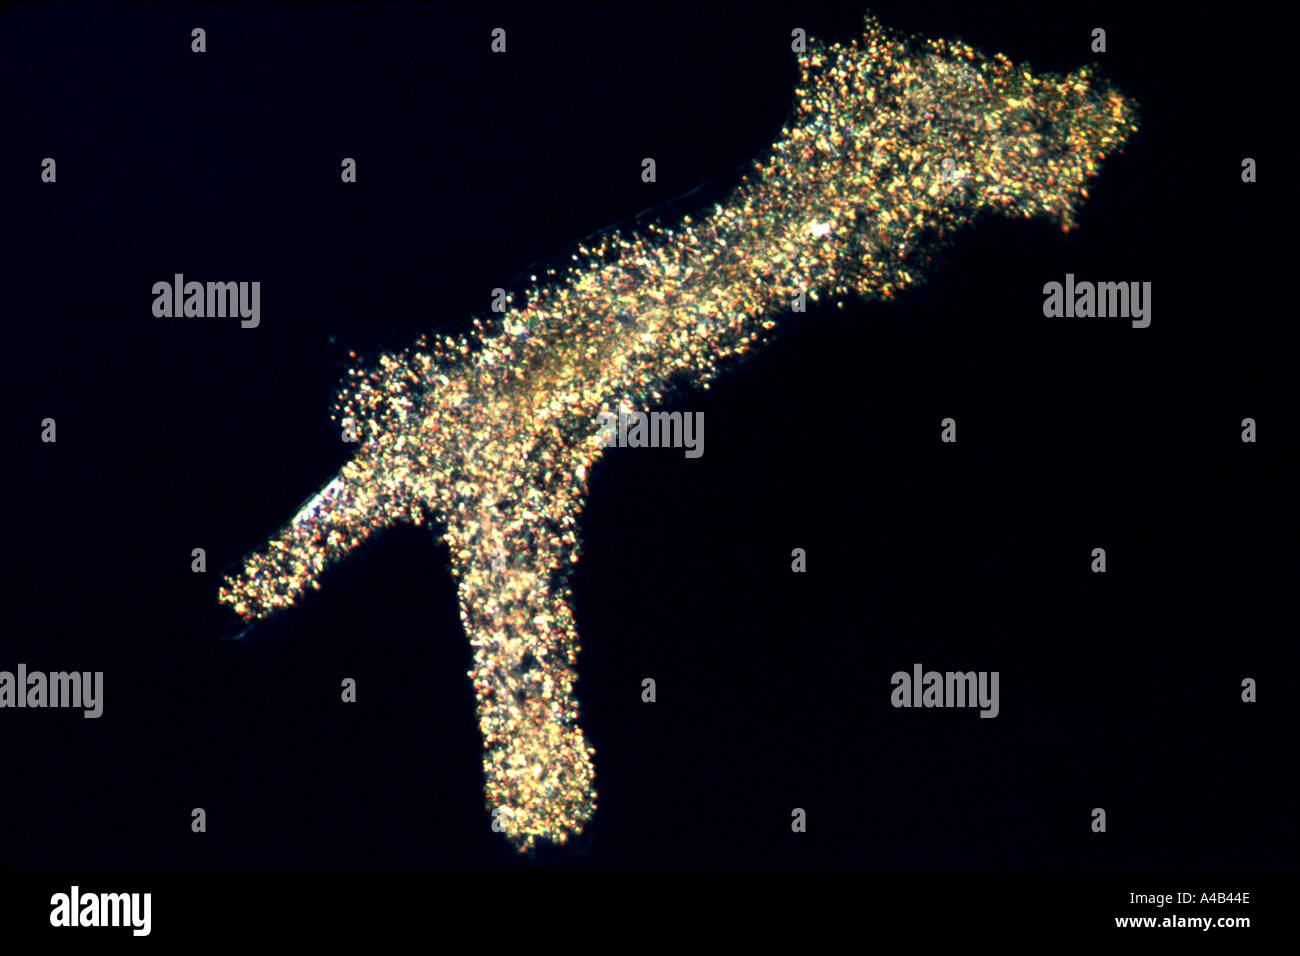 Photomicrograph of living ameba Stock Photo